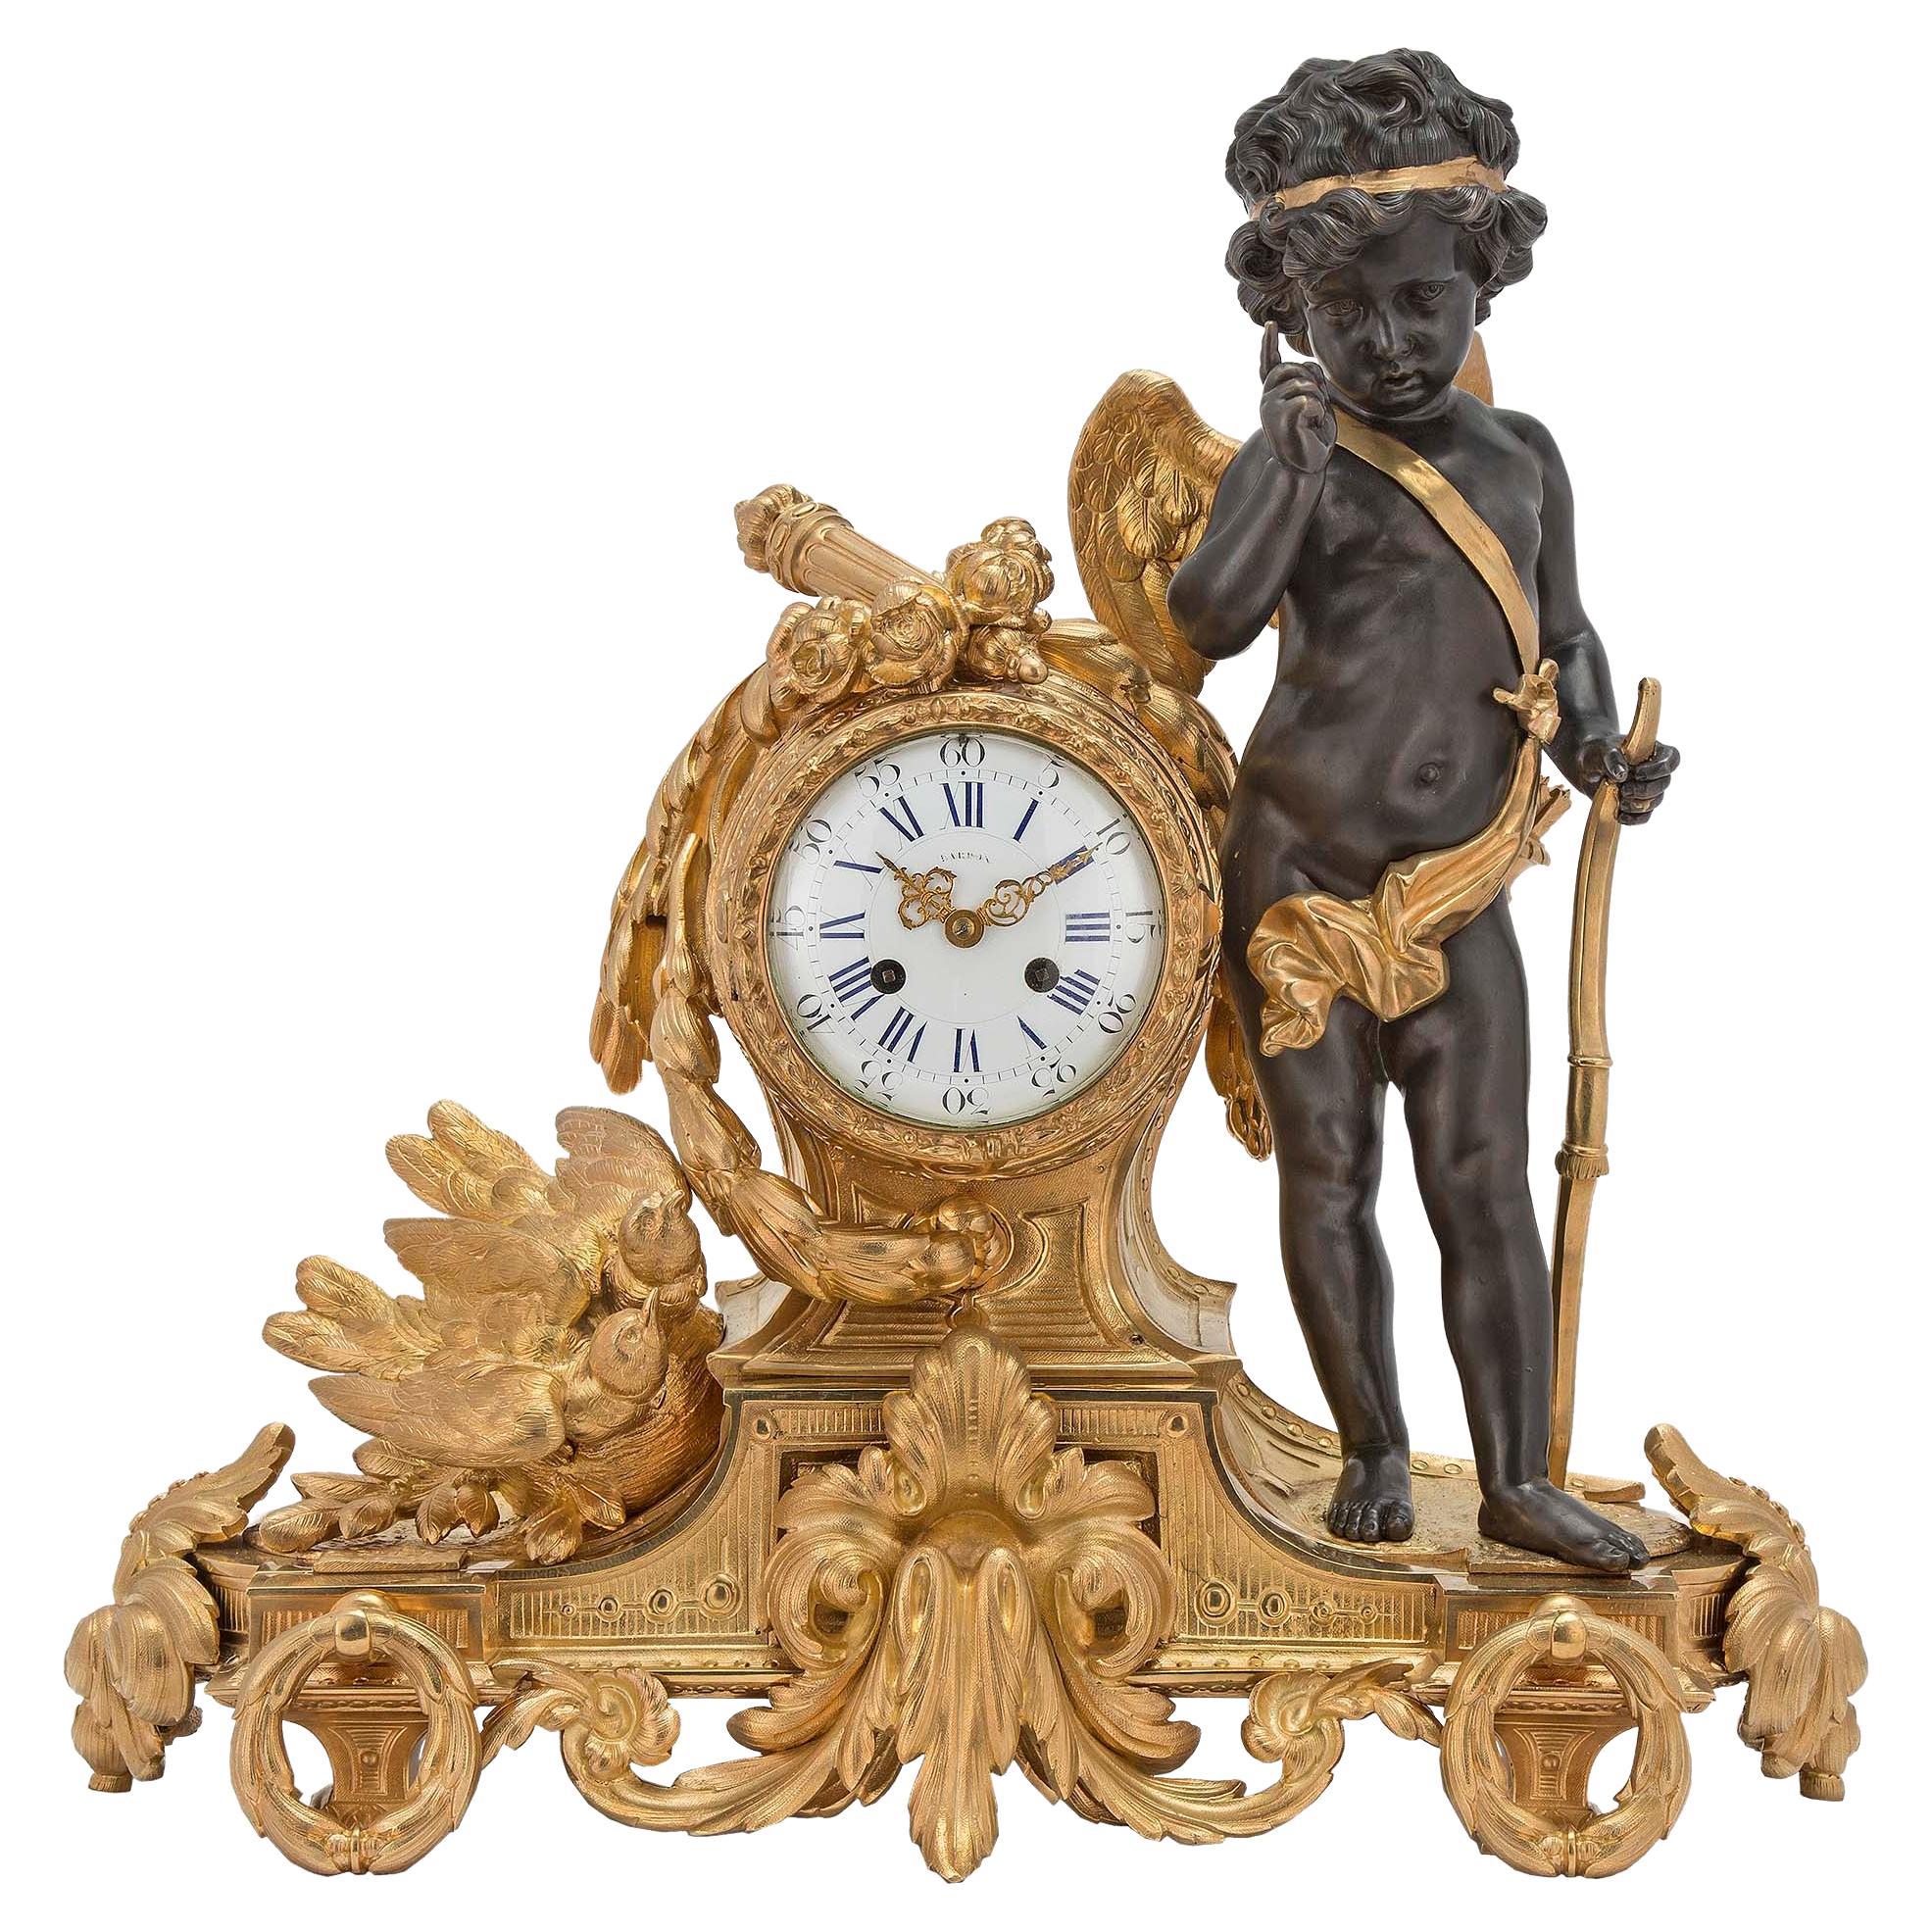 1404 на часах. Japy freres часы. Louis XVI Mirabeau-1404 часы. Часы в стиле Барокко настольные. Часы настольные бронза Барокко.